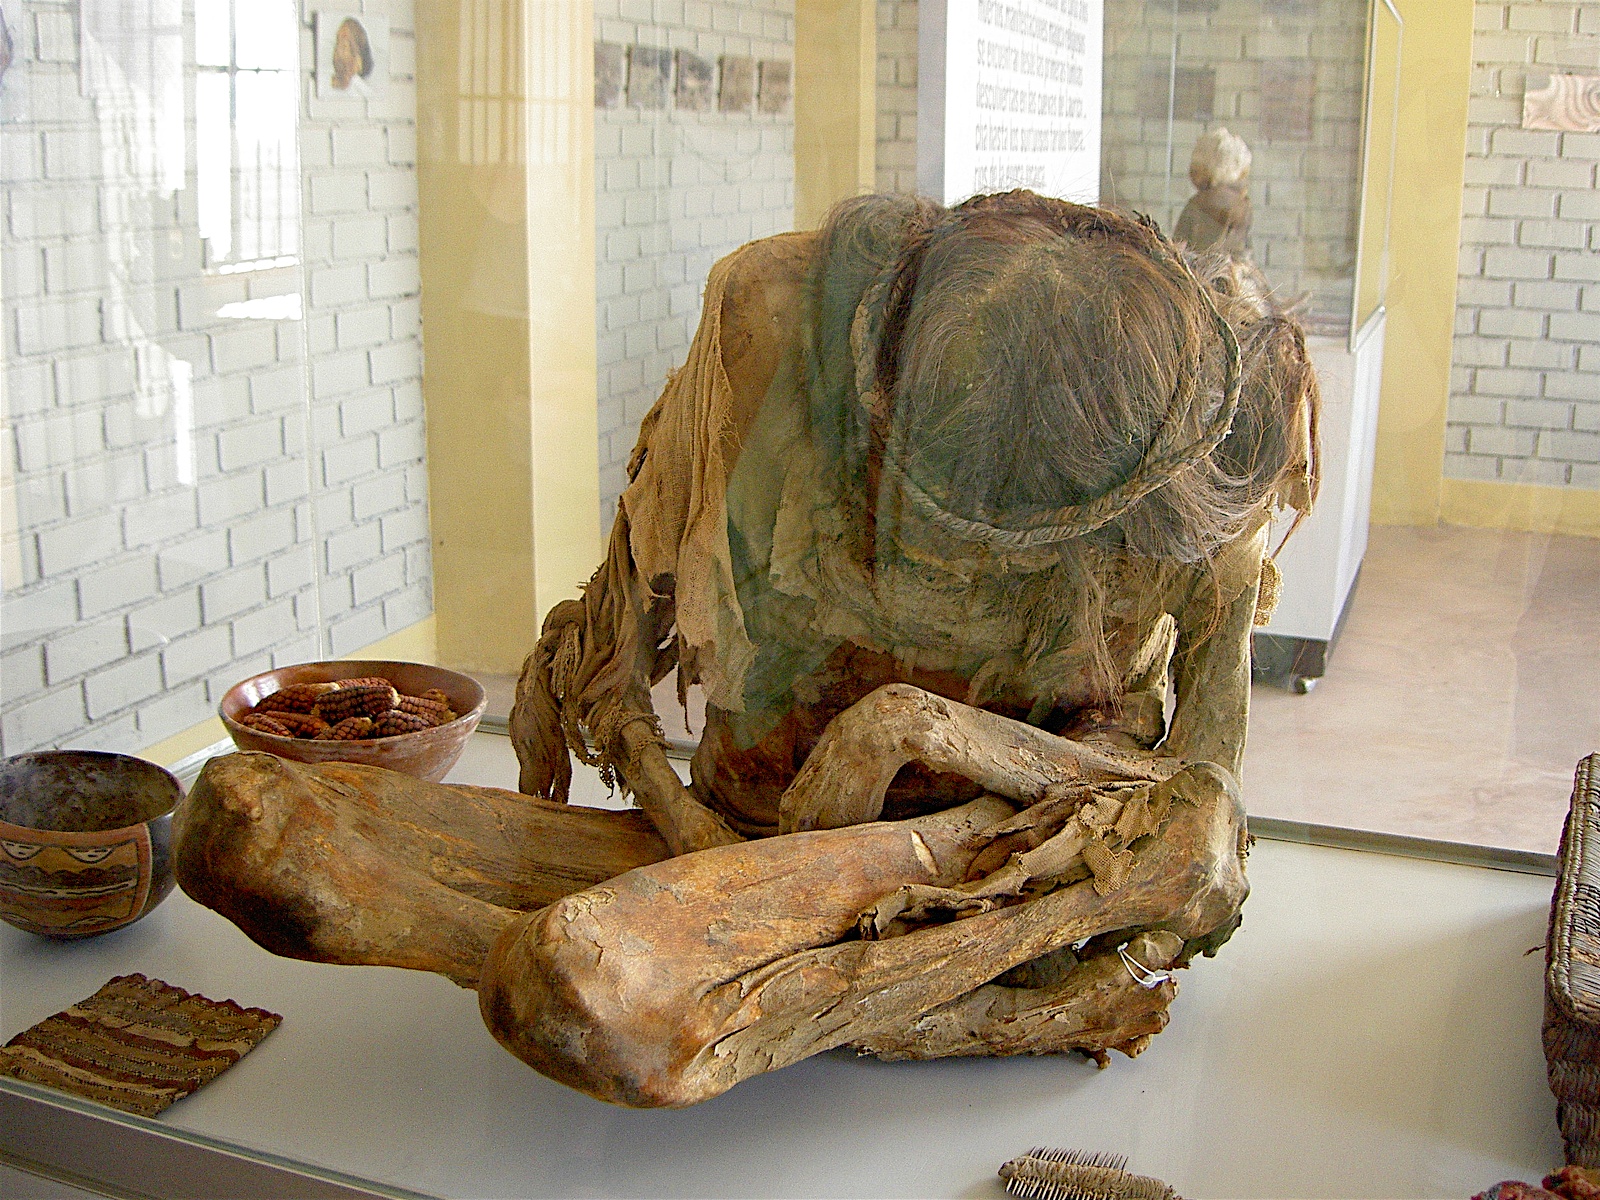 Nazca mummy